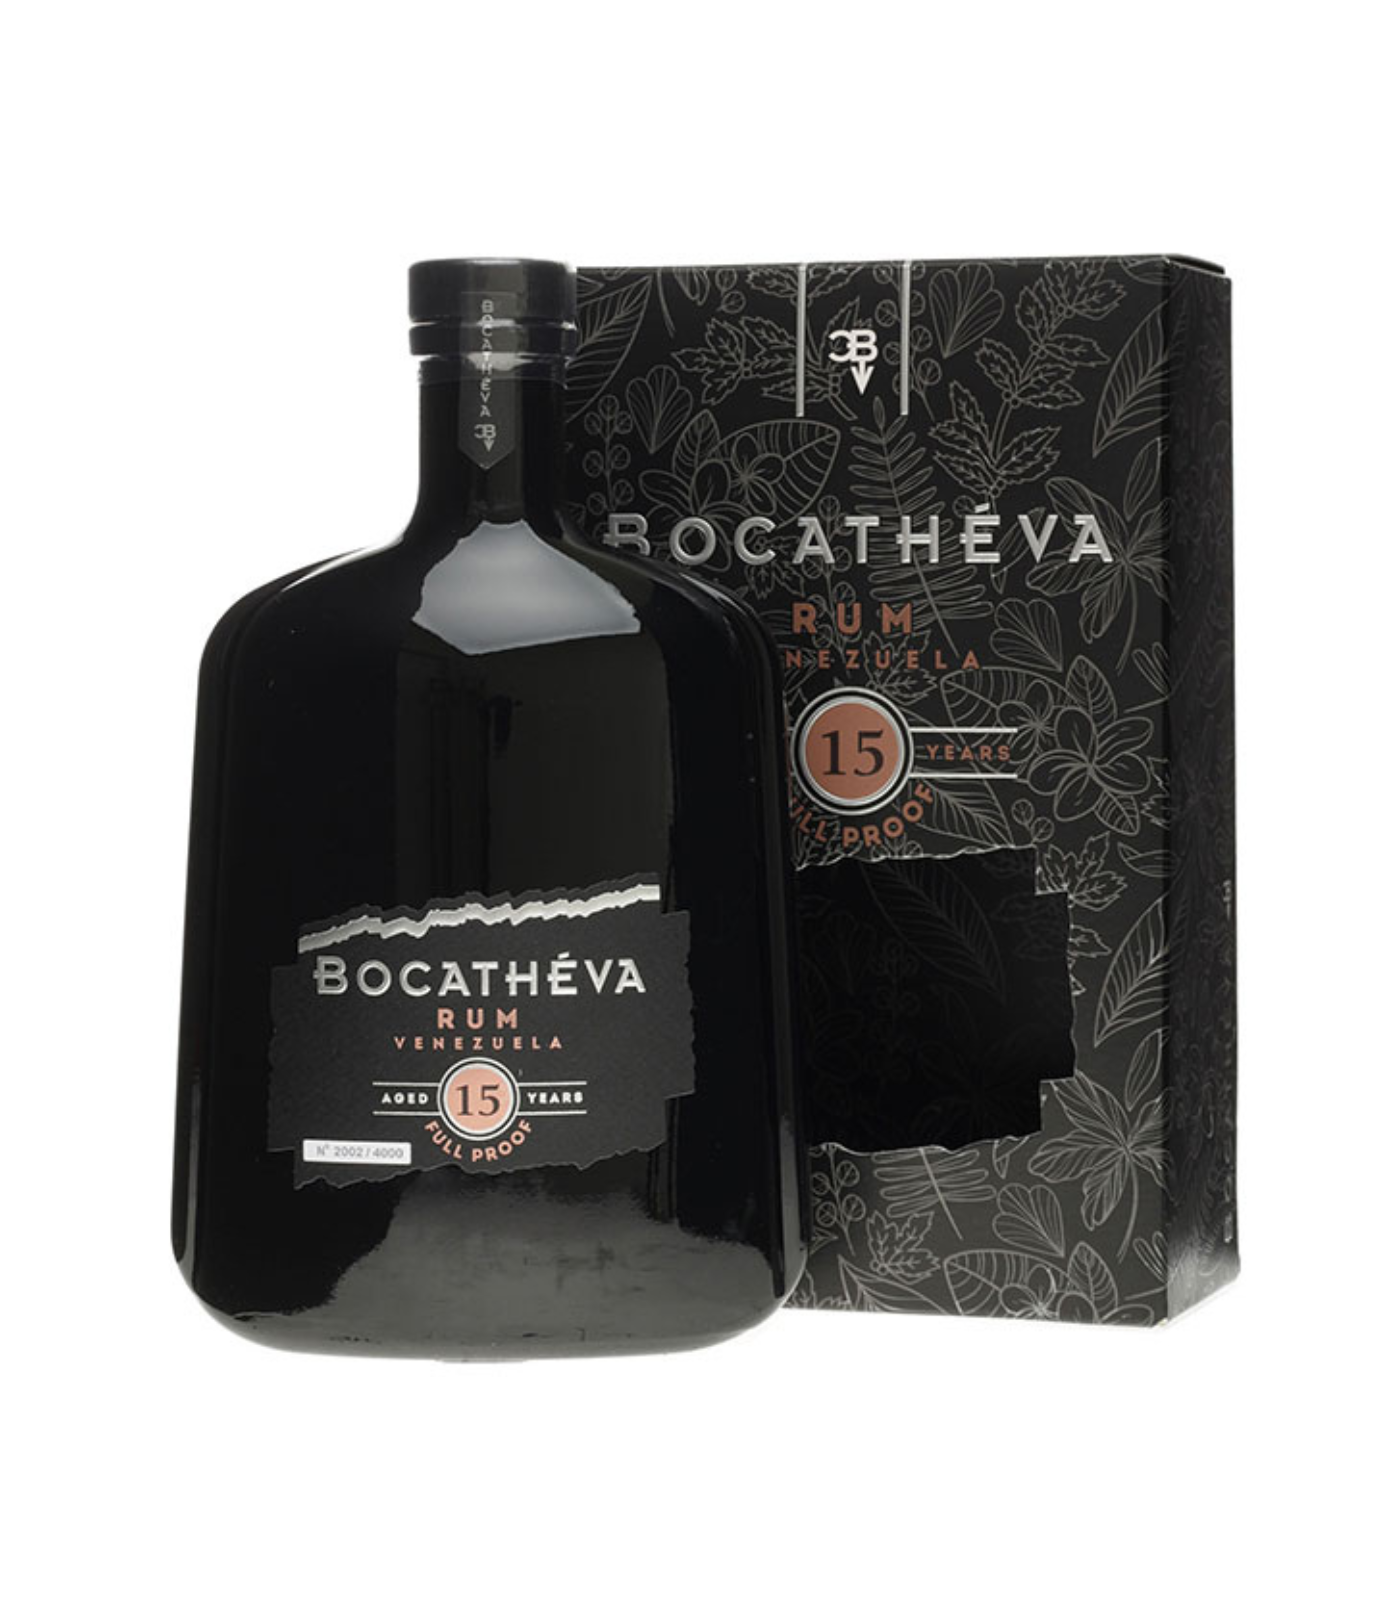 Bocatheva 15 Year Old Rum - Venezuela (70cl; 45%)